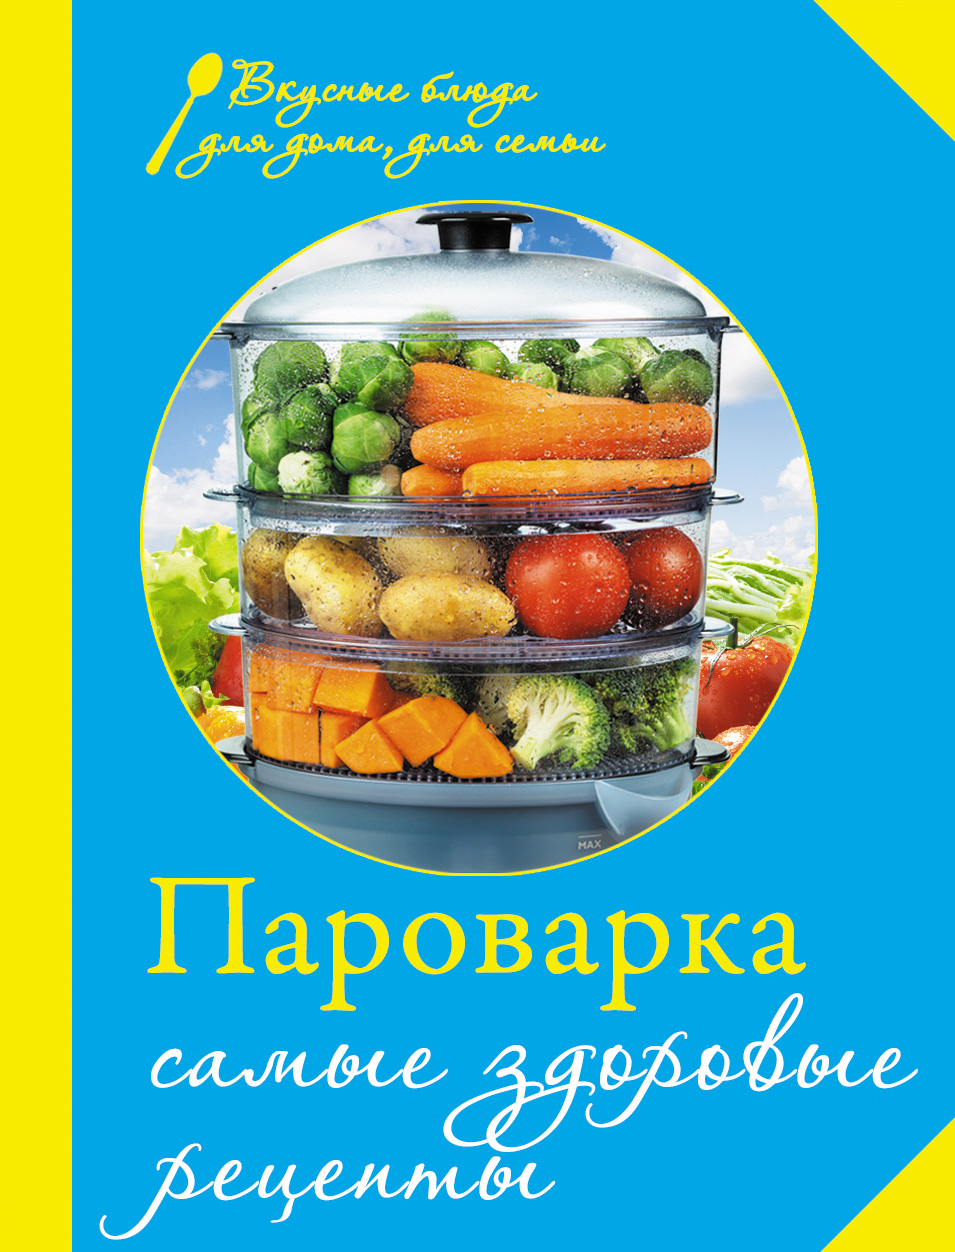 Книга Пароварка. Самые здоровые рецепты из серии , созданная Е. Левашева, может относится к жанру Кулинария. Стоимость электронной книги Пароварка. Самые здоровые рецепты с идентификатором 6130022 составляет 49.90 руб.